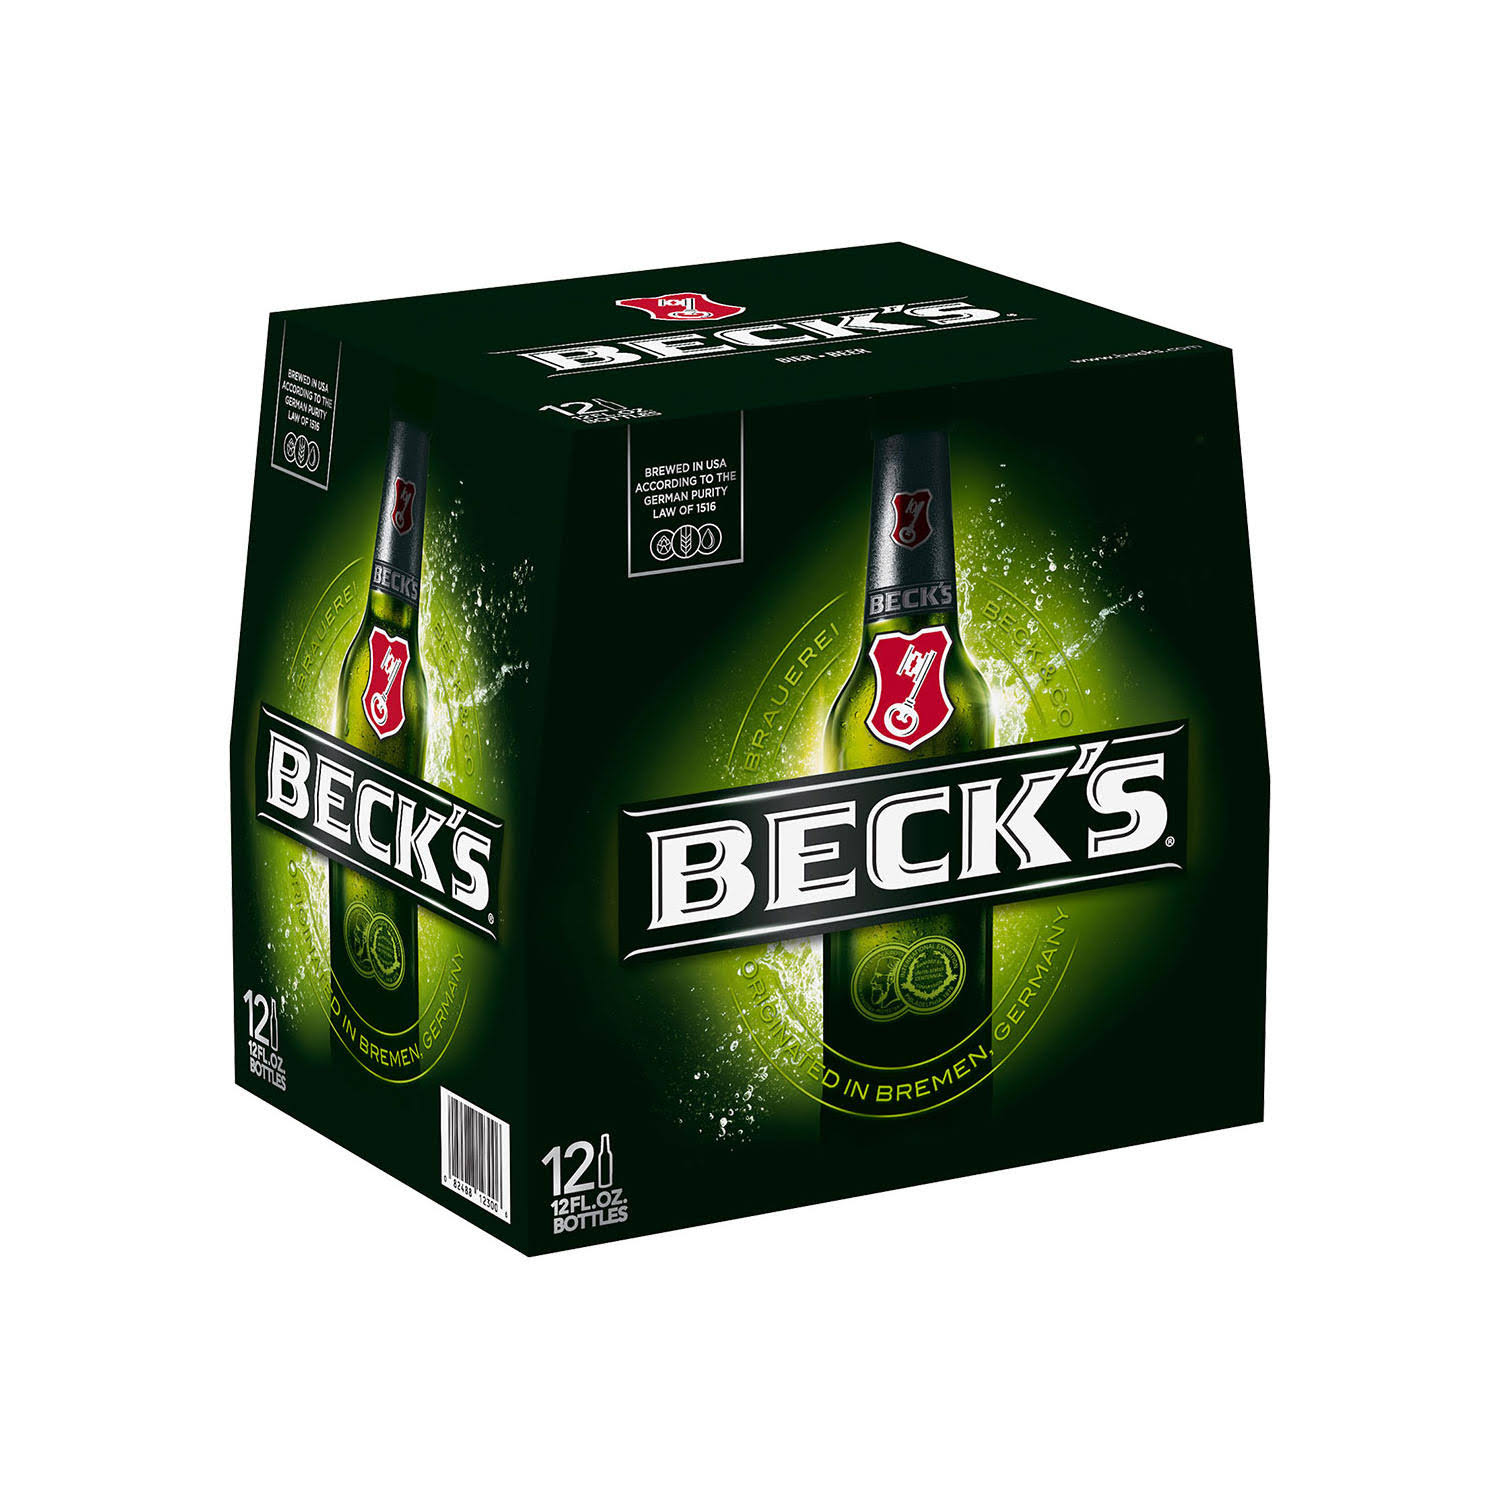 Beck's Beer - 12 pack, 12 fl oz bottles